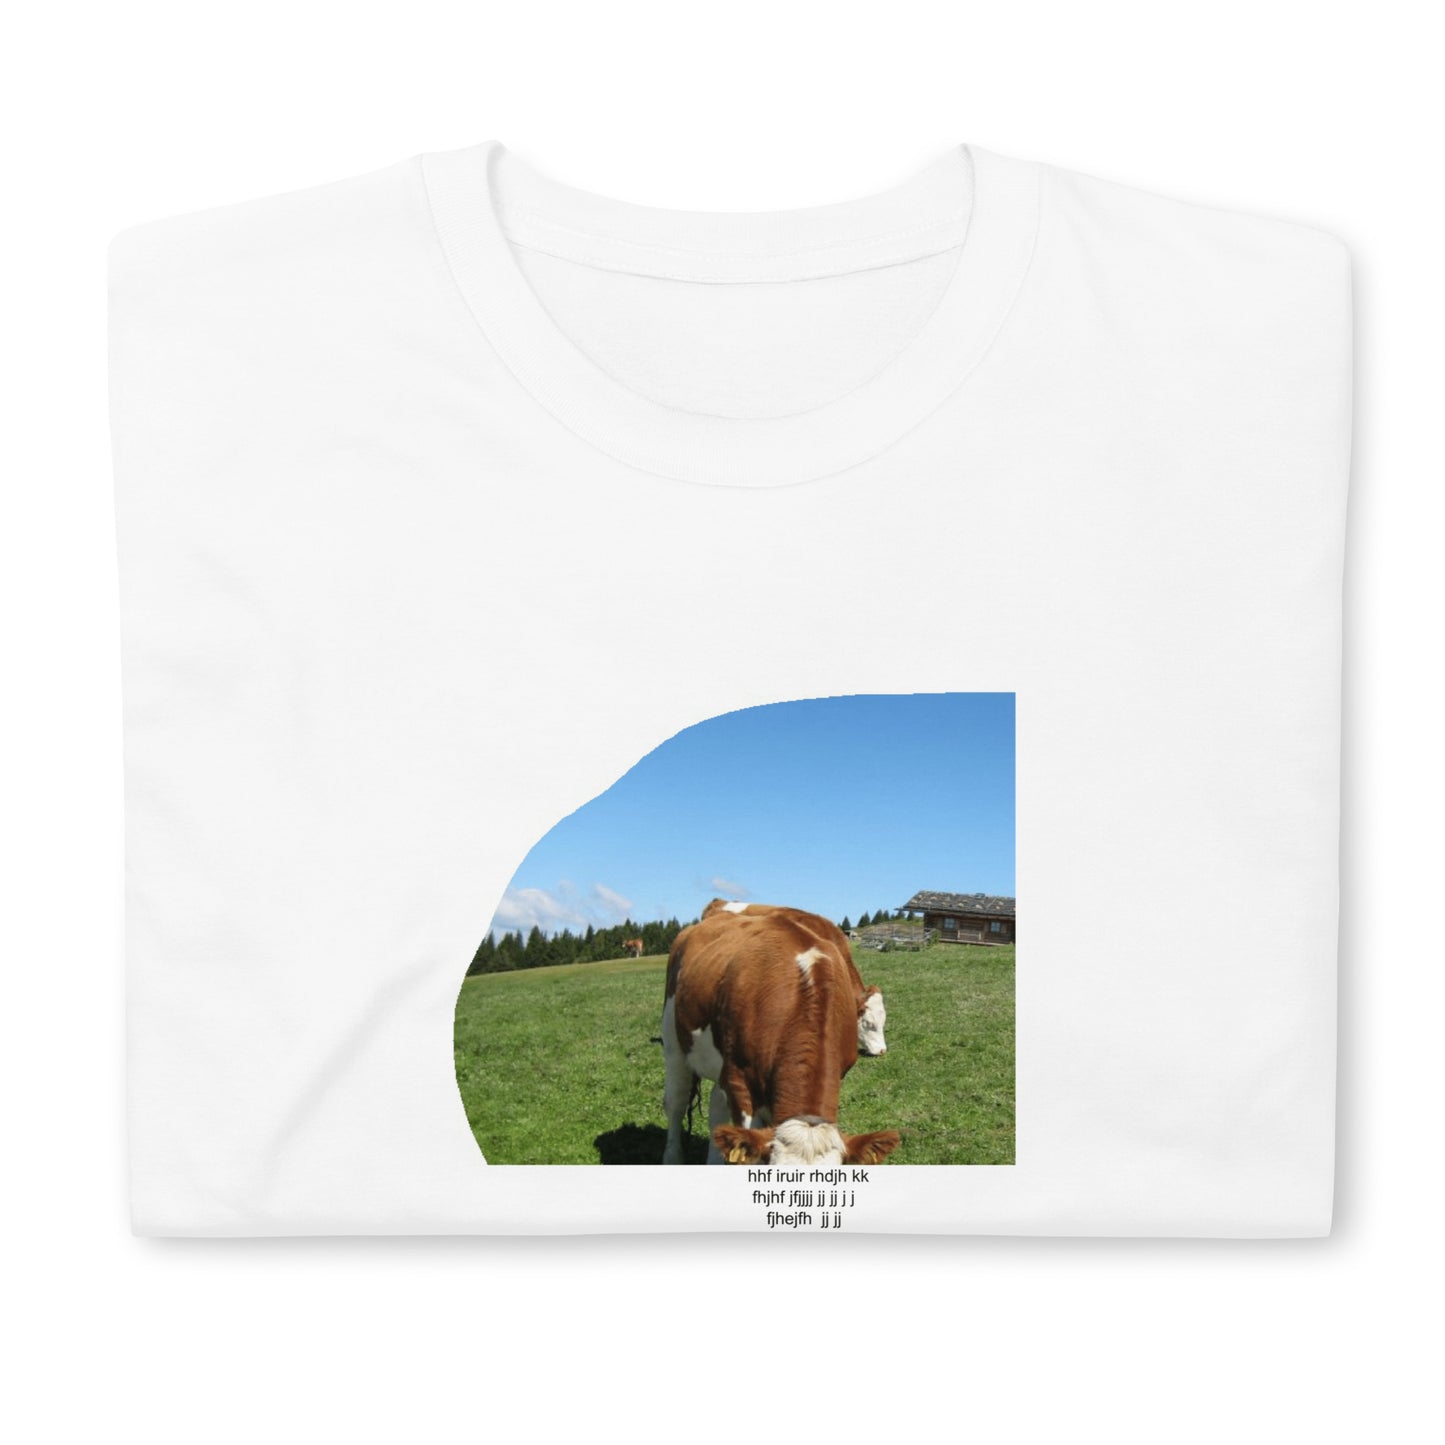 Unisex-T-Shirt Kuh auf Weide